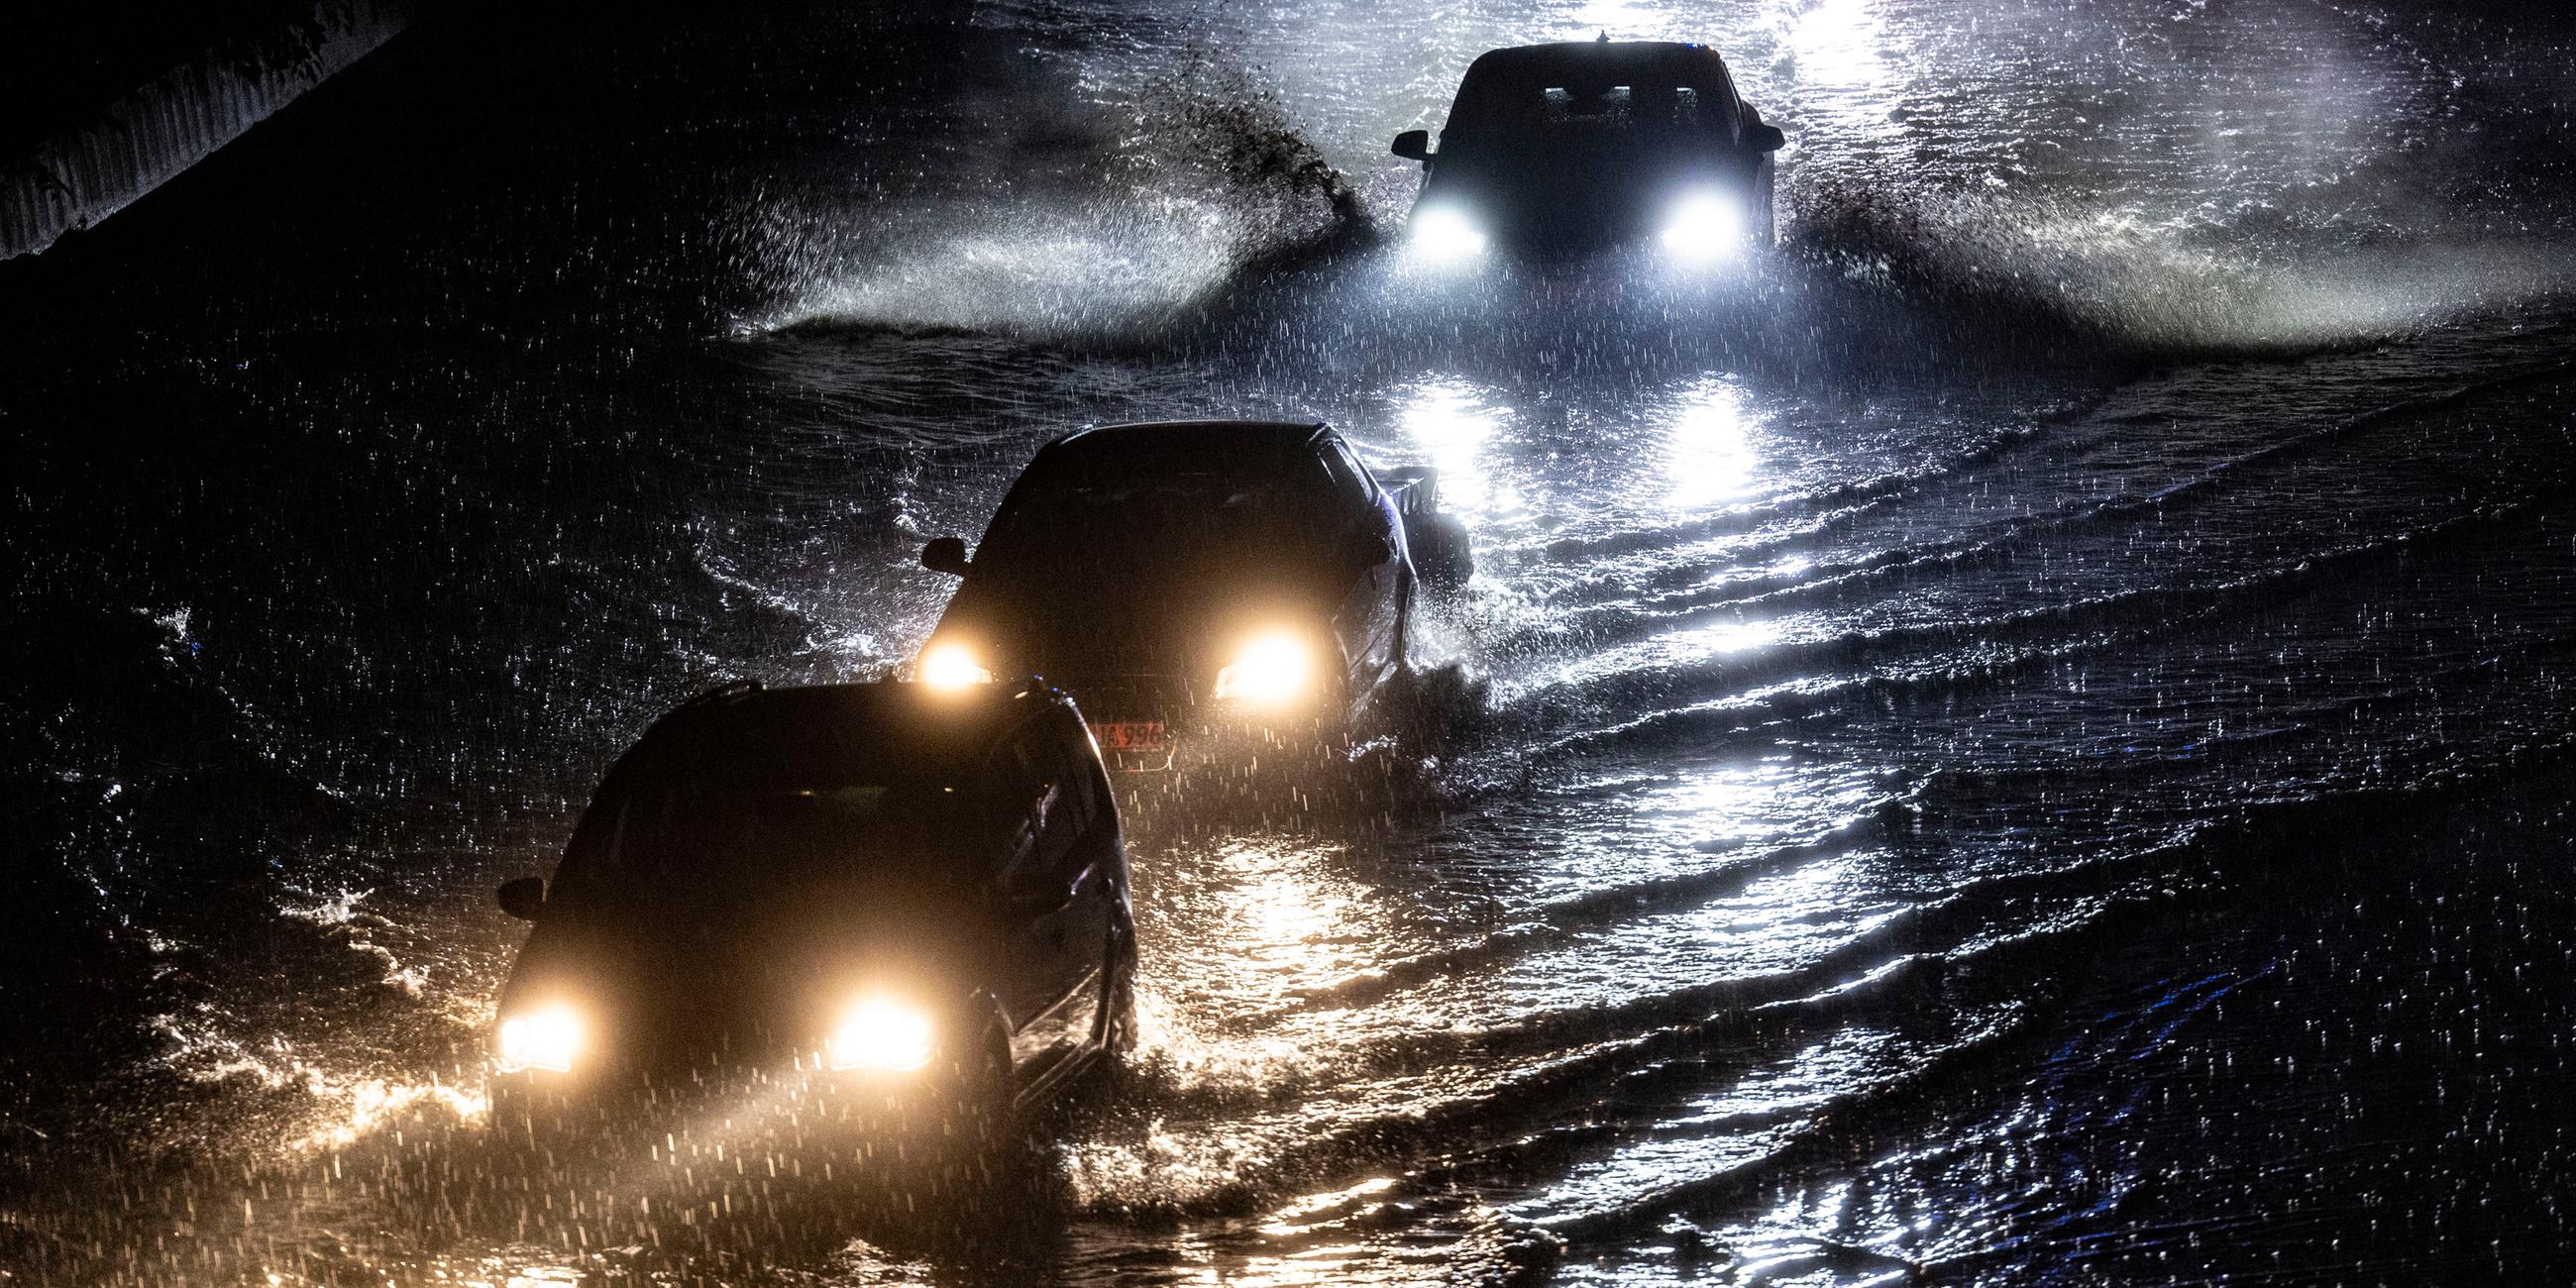 Teilabschnitte der Autobahn A59 in Duisburg sind am Abend nach stundenlangen Regenfällen überschwemmt, Autos fahren durch die Wassermassen.